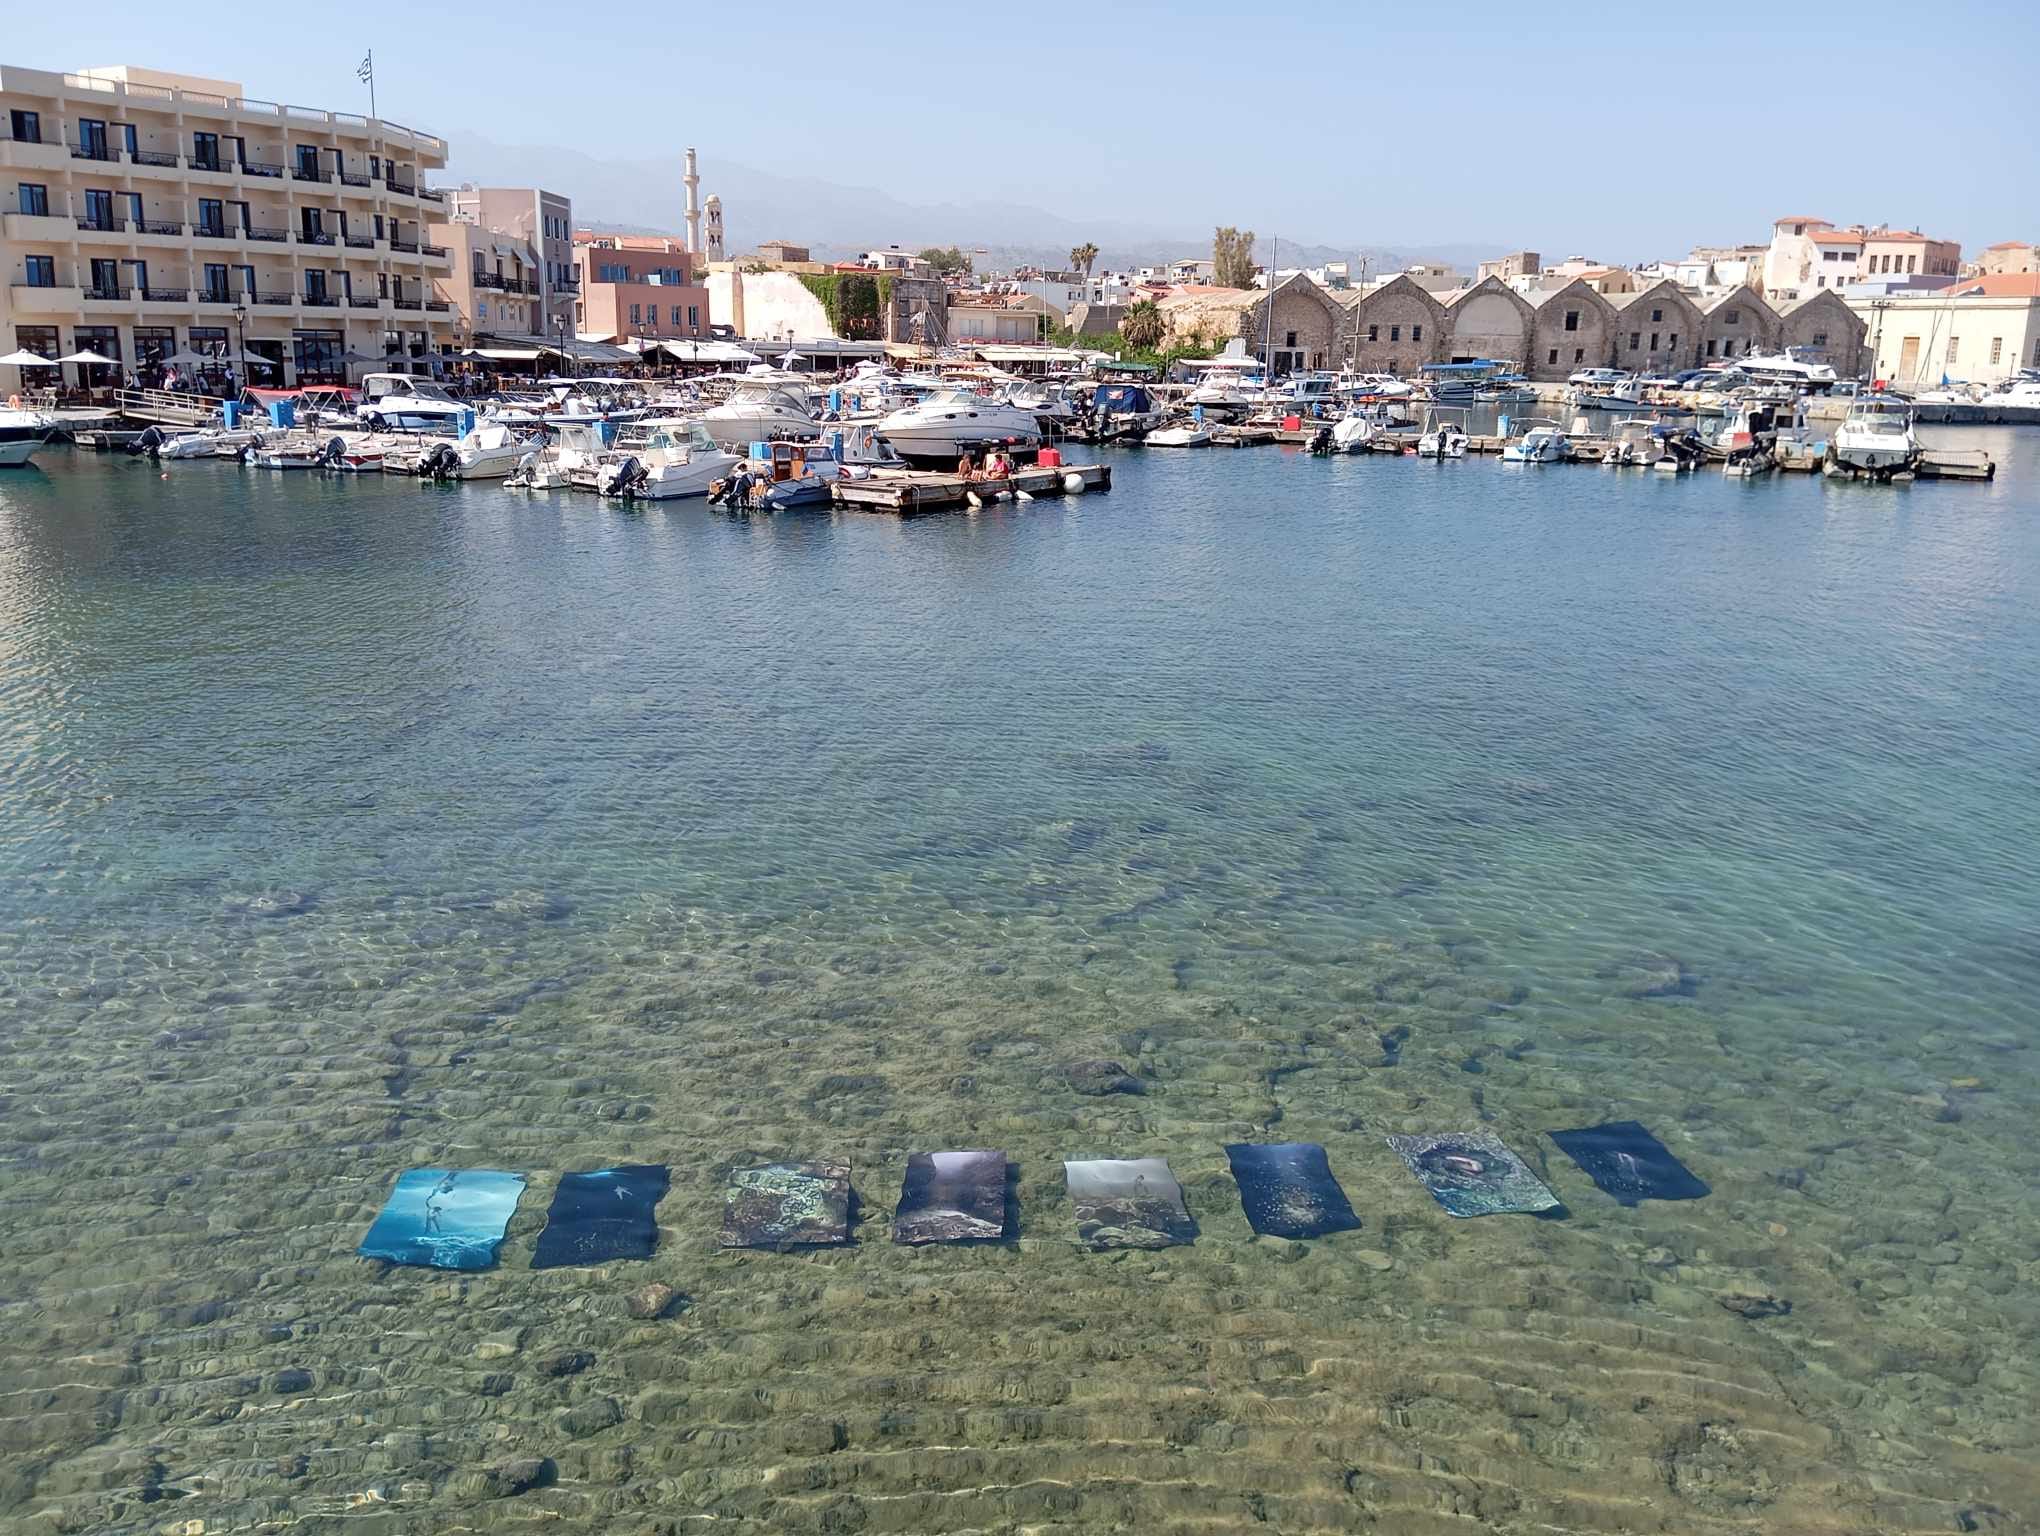 «ΟΙΚΟ SEA»: Η πρώτη υποβρύχια έκθεση φωτογραφίας του Δήμου Χανίων στον λιμενοβραχίονα του Φάρου στο Ενετικό λιμάνι